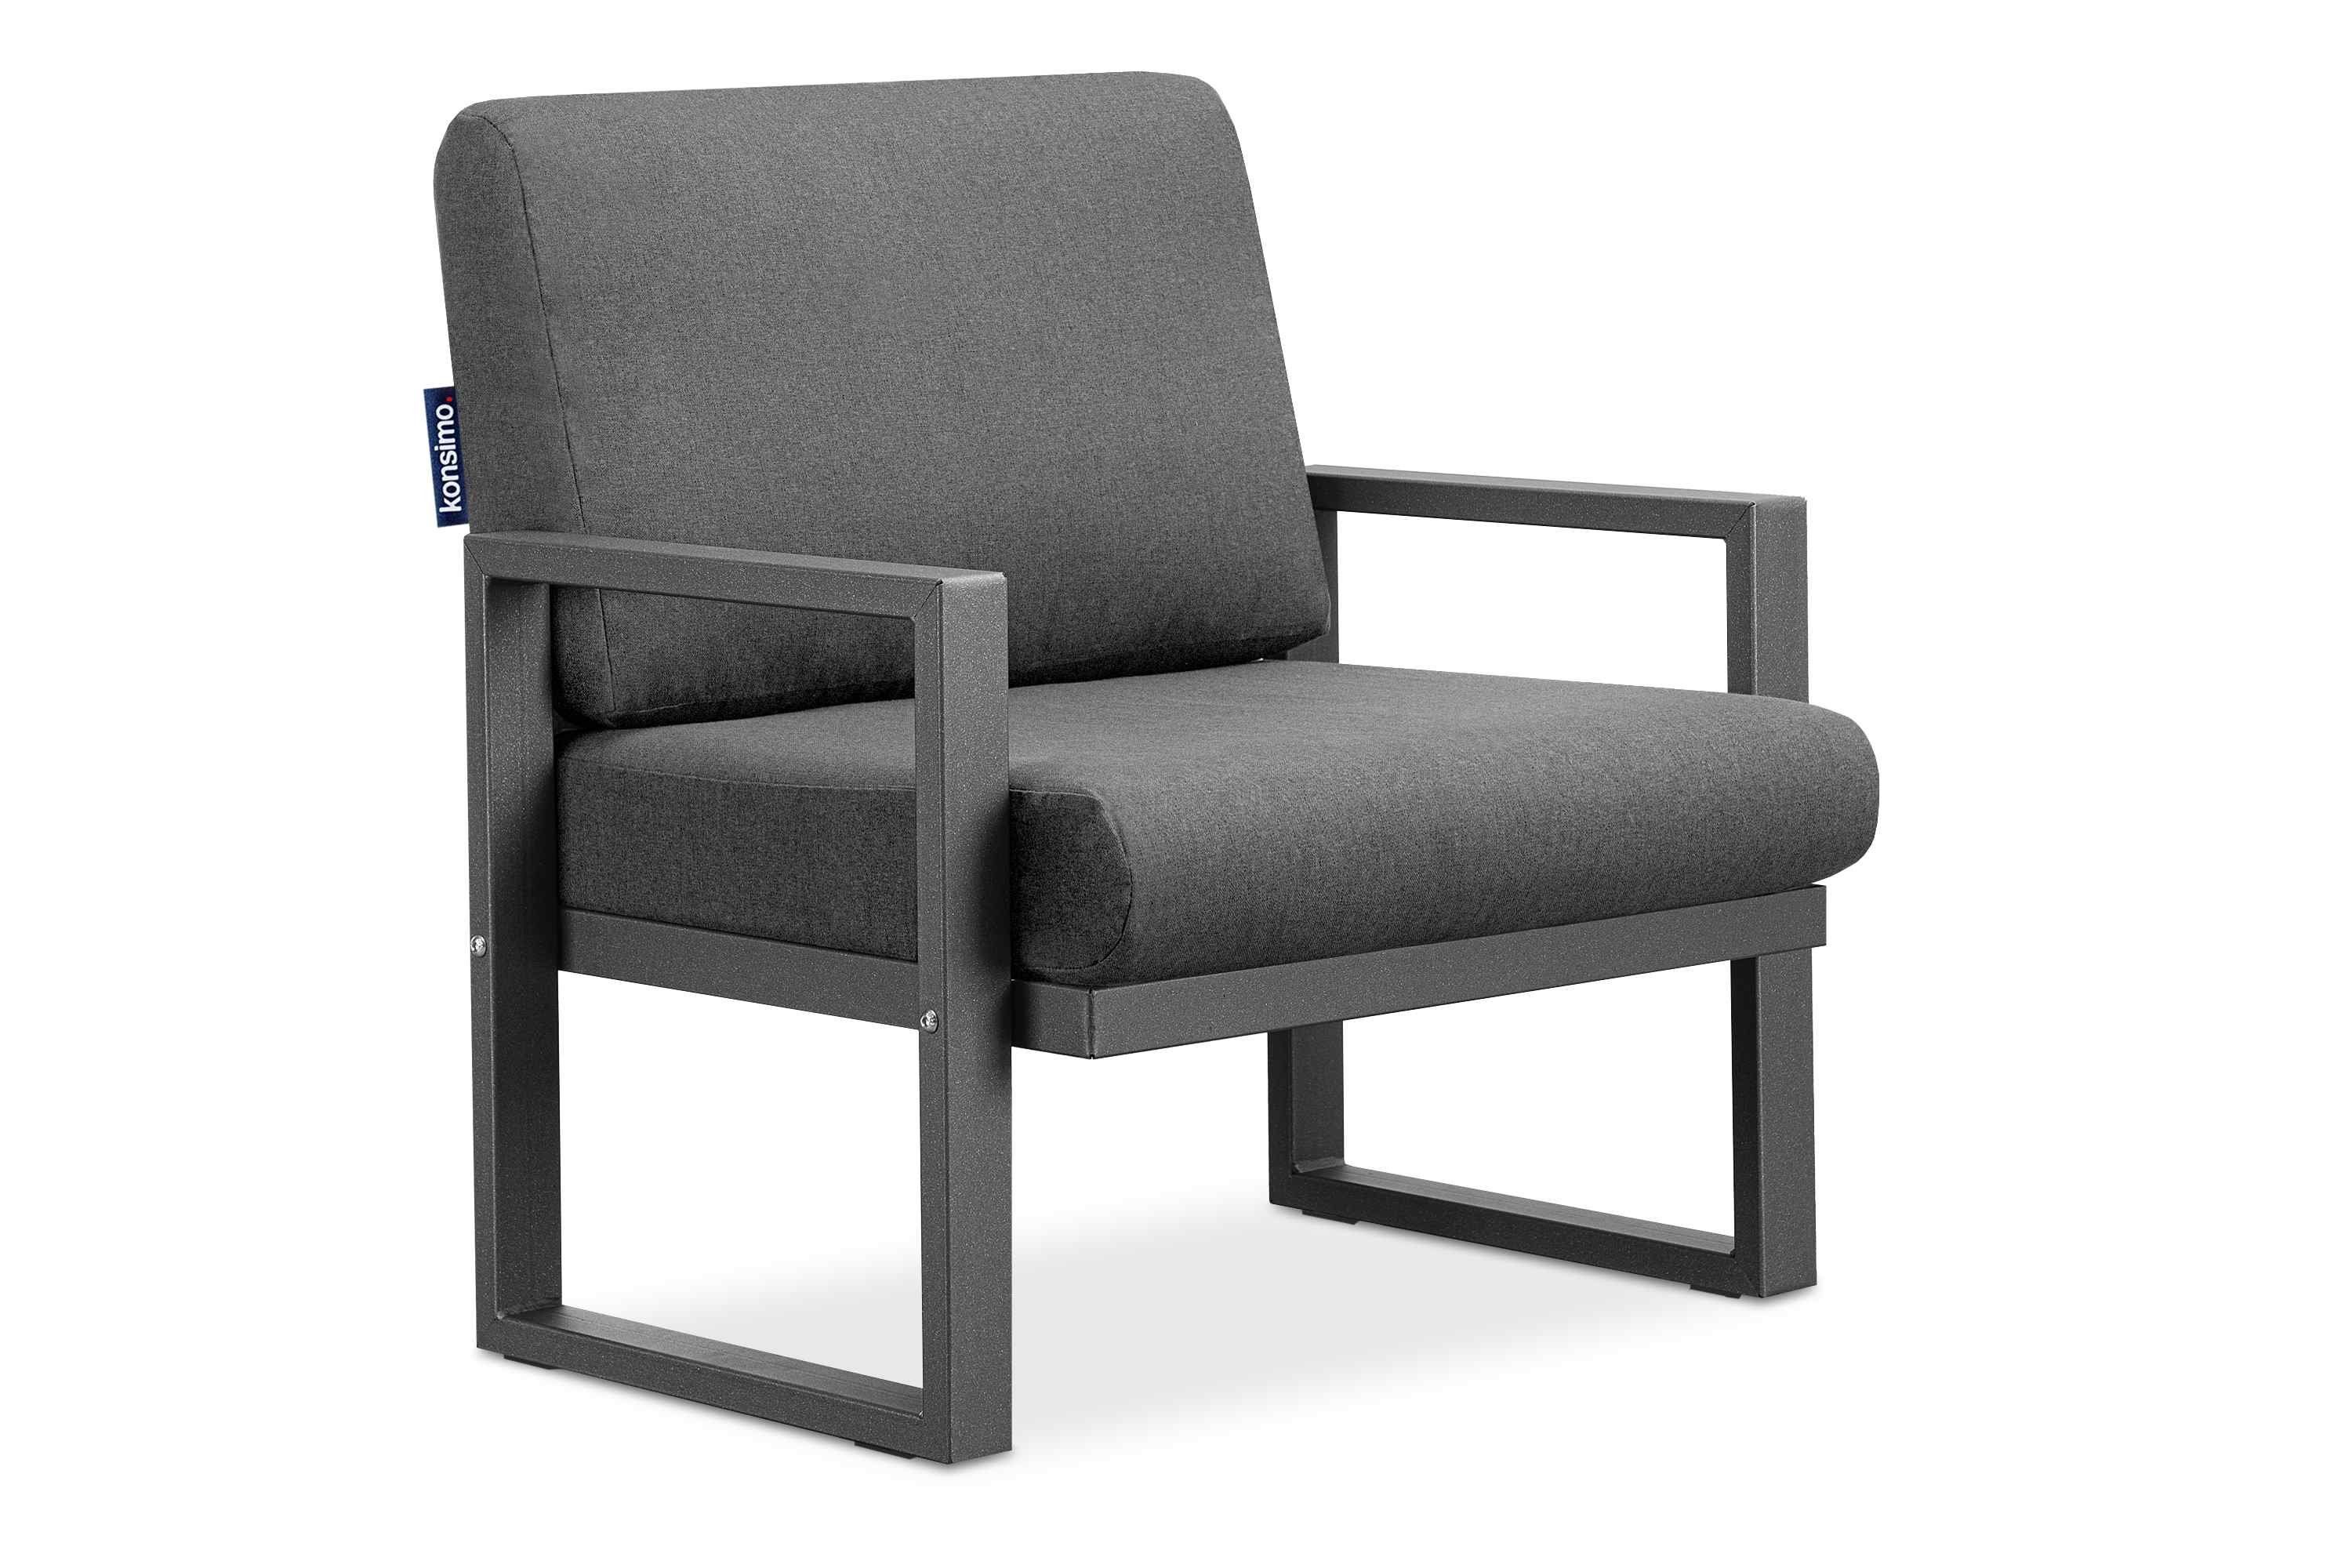 Konsimo Gartensessel FRENA Garten-Sessel (1x Sessel), pflegeleicht, bequeme Sitz- und Rückenkissen, schmutz- und wasserabweisend, UV-Beständigkeit anthrazit / grau